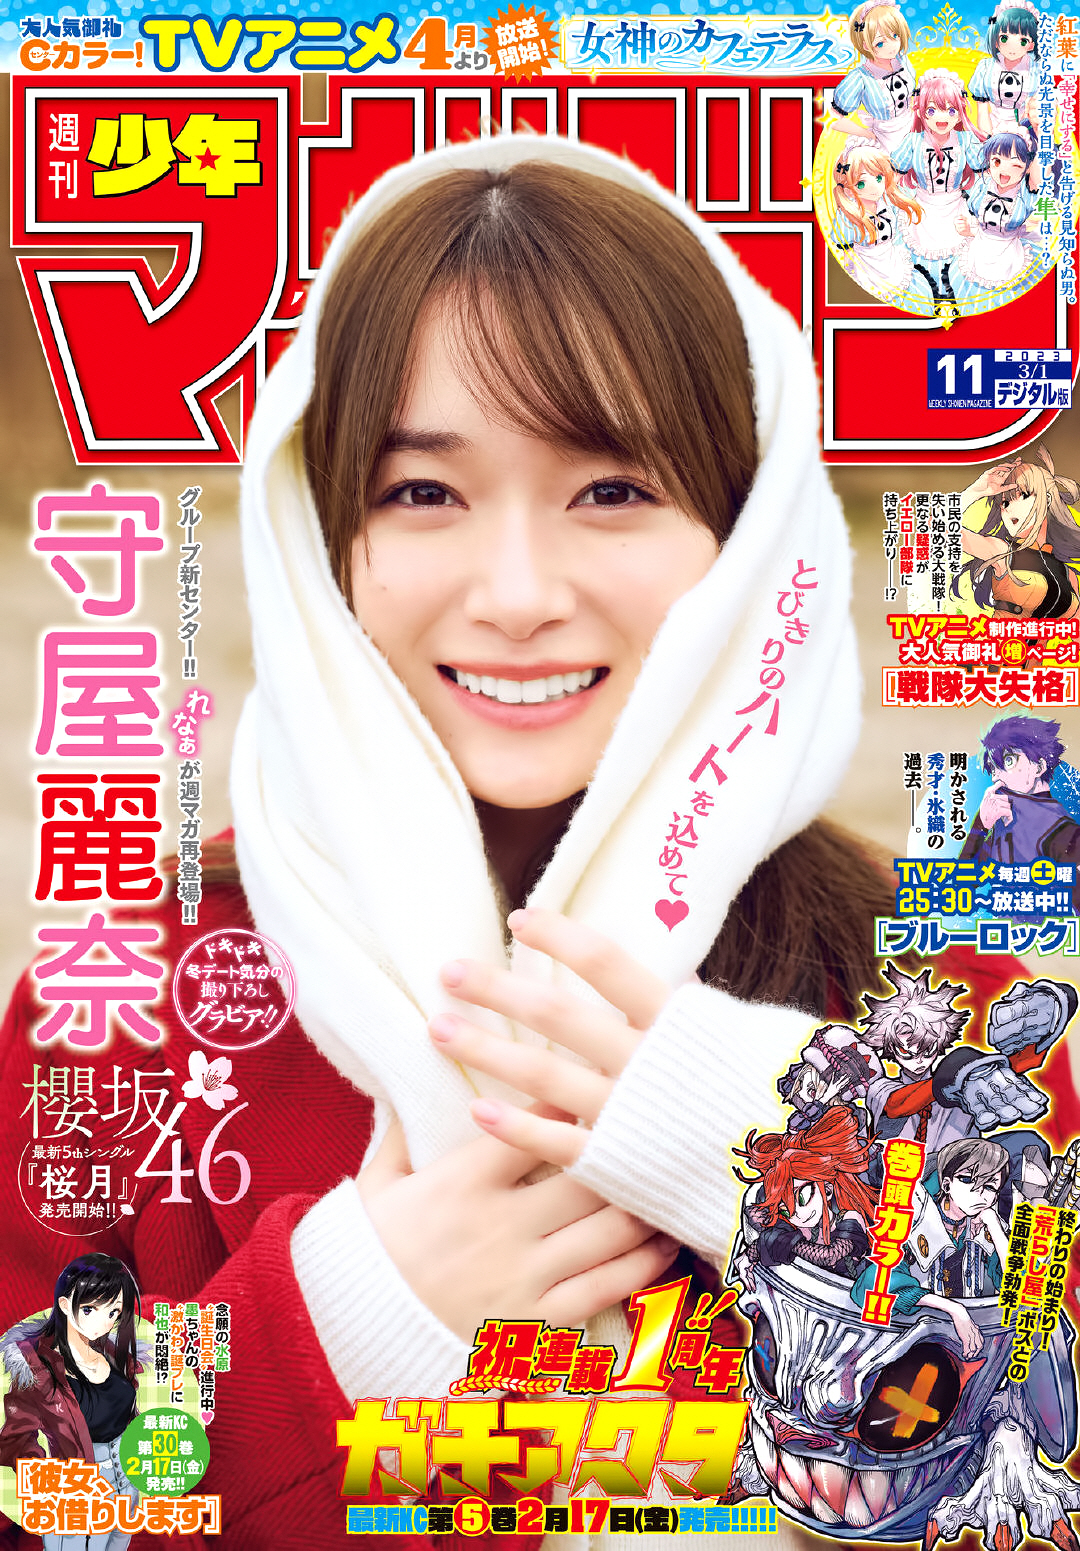 Sakurazaka 46 Moriya Lena Weekly Boys Magazine